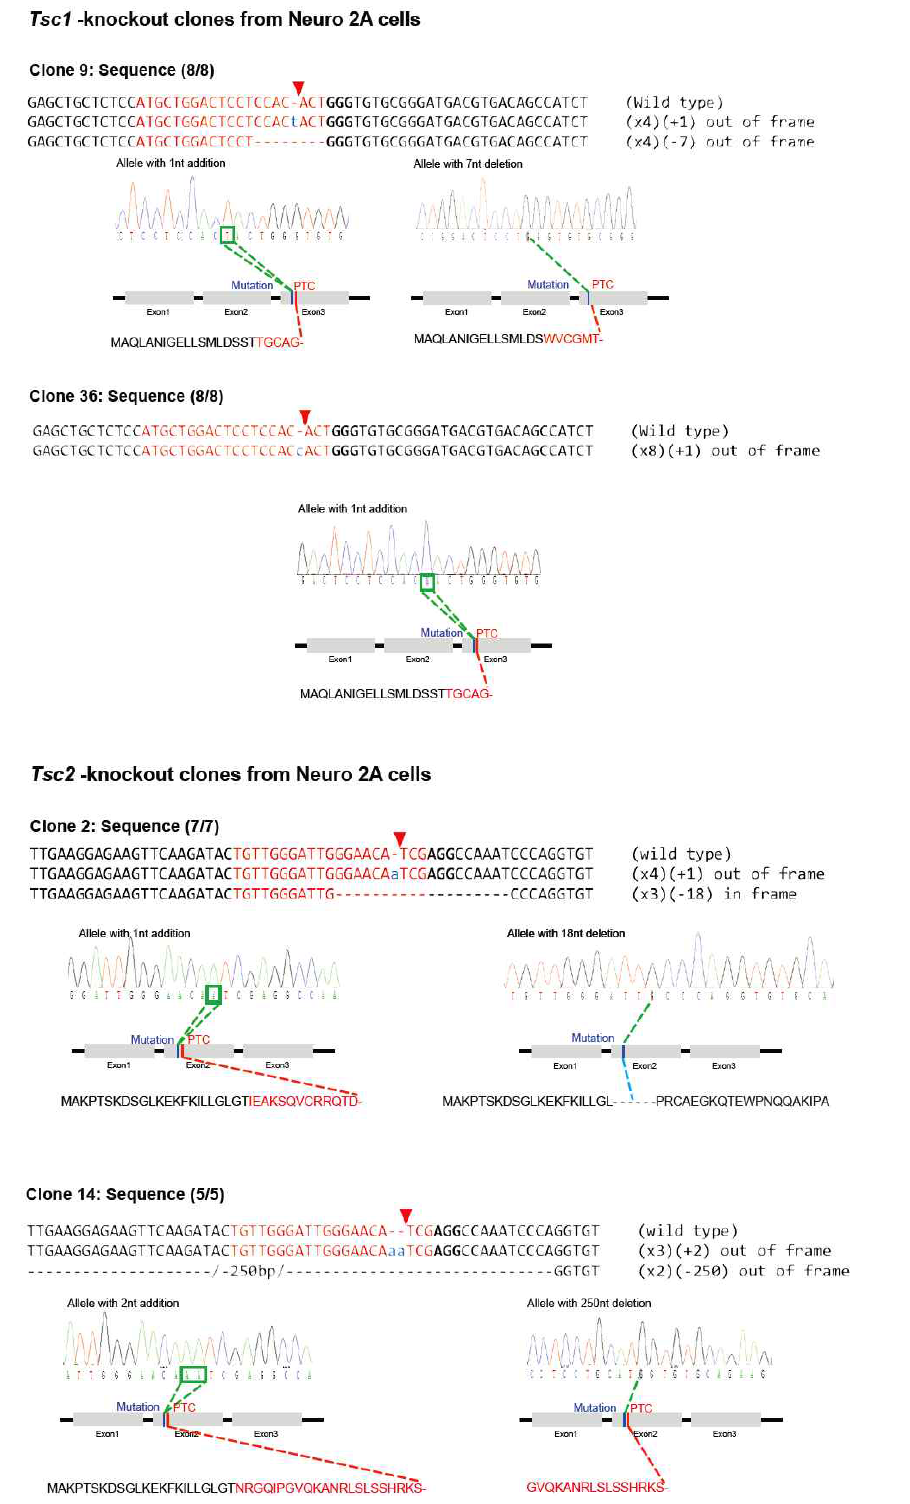 유전자 가위를 이용하여 만든 Tsc1-, Tsc2-mutated Neuro2A cell ine